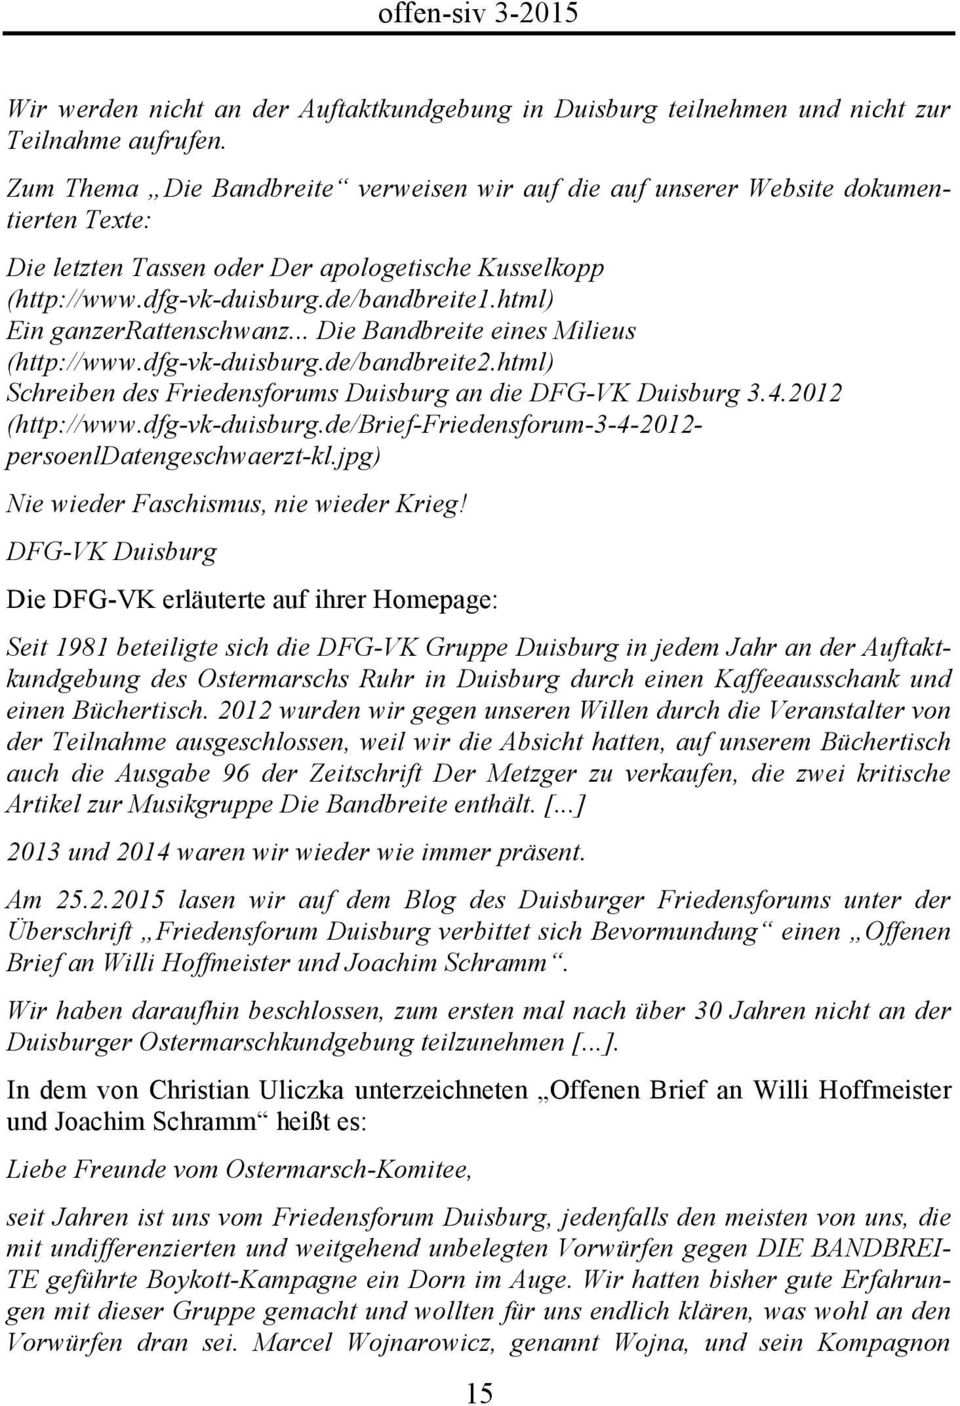 html) Ein ganzerrattenschwanz... Die Bandbreite eines Milieus (http://www.dfg-vk-duisburg.de/bandbreite2.html) Schreiben des Friedensforums Duisburg an die DFG-VK Duisburg 3.4.2012 (http://www.